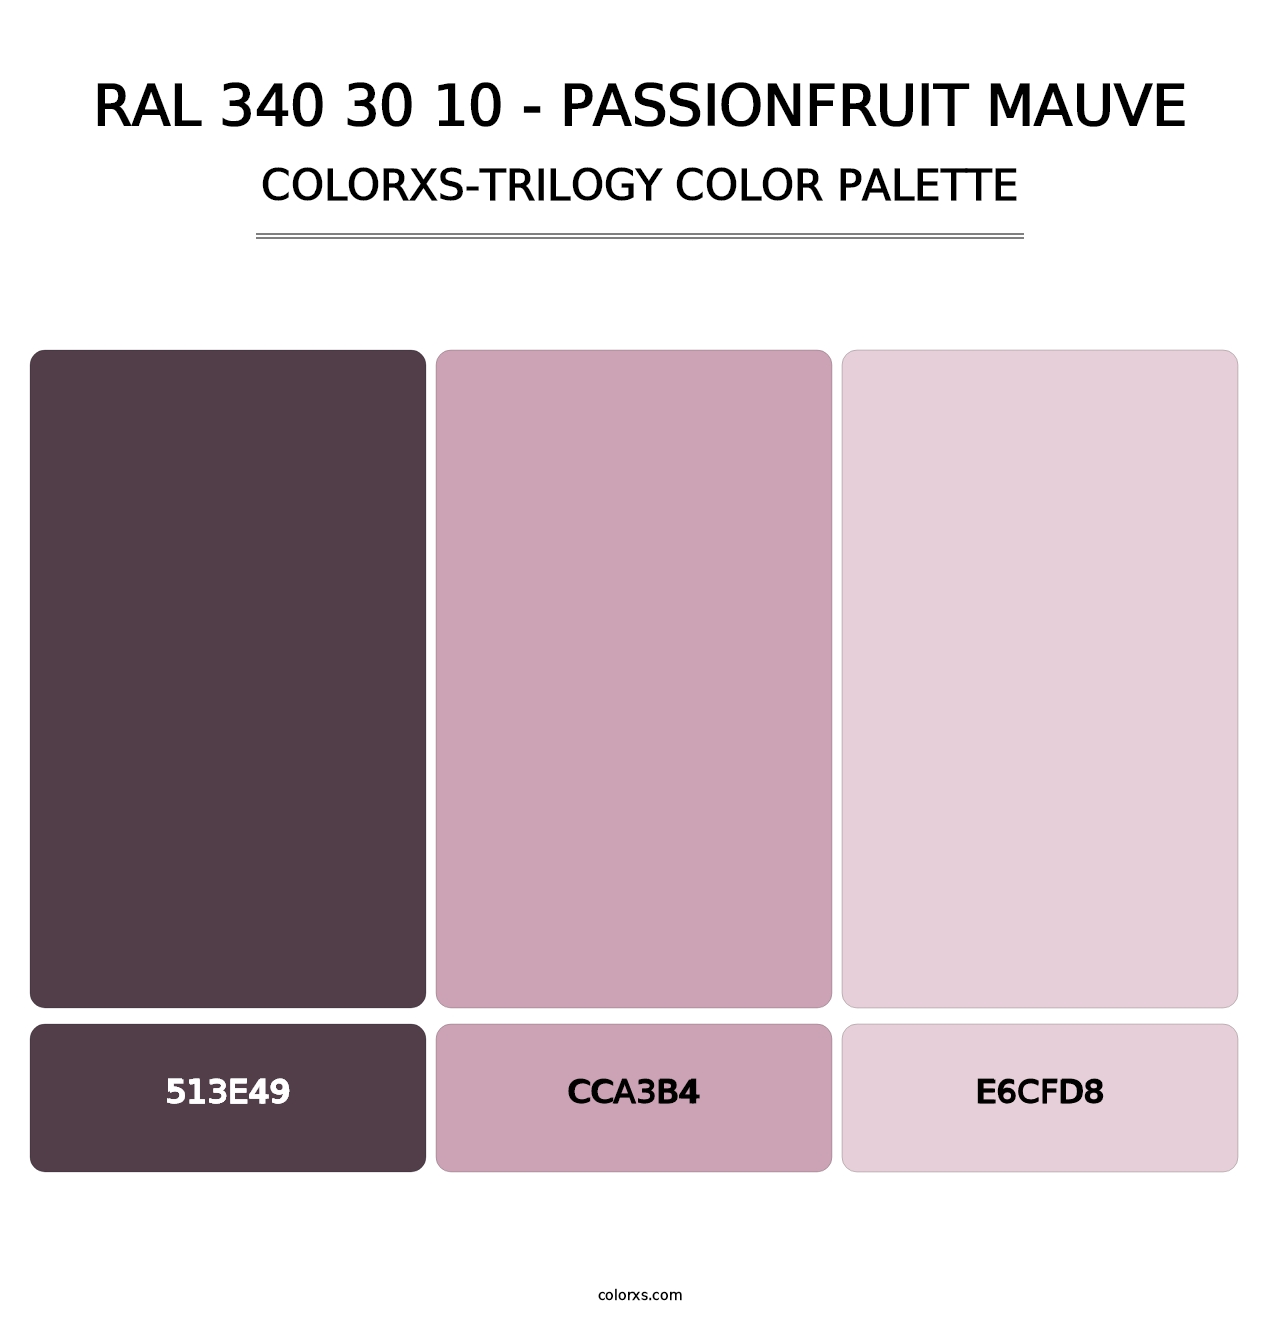 RAL 340 30 10 - Passionfruit Mauve - Colorxs Trilogy Palette